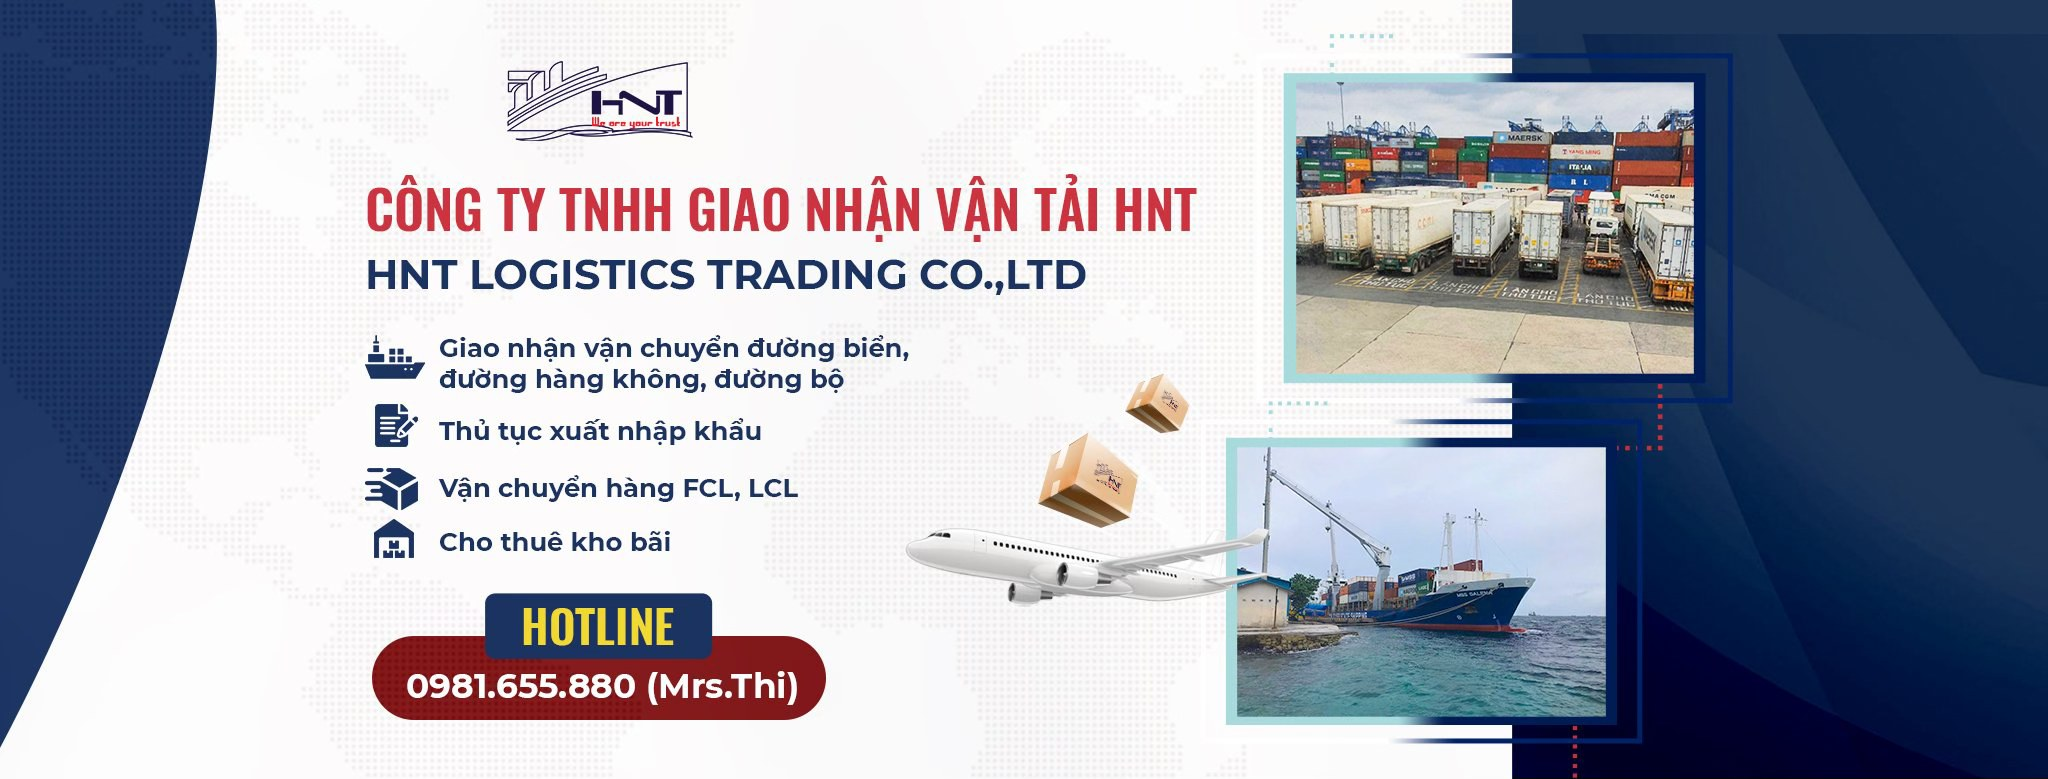 HNT - Đơn vị với hơn 12 năm kinh nghiệm về dịch vụ logistics